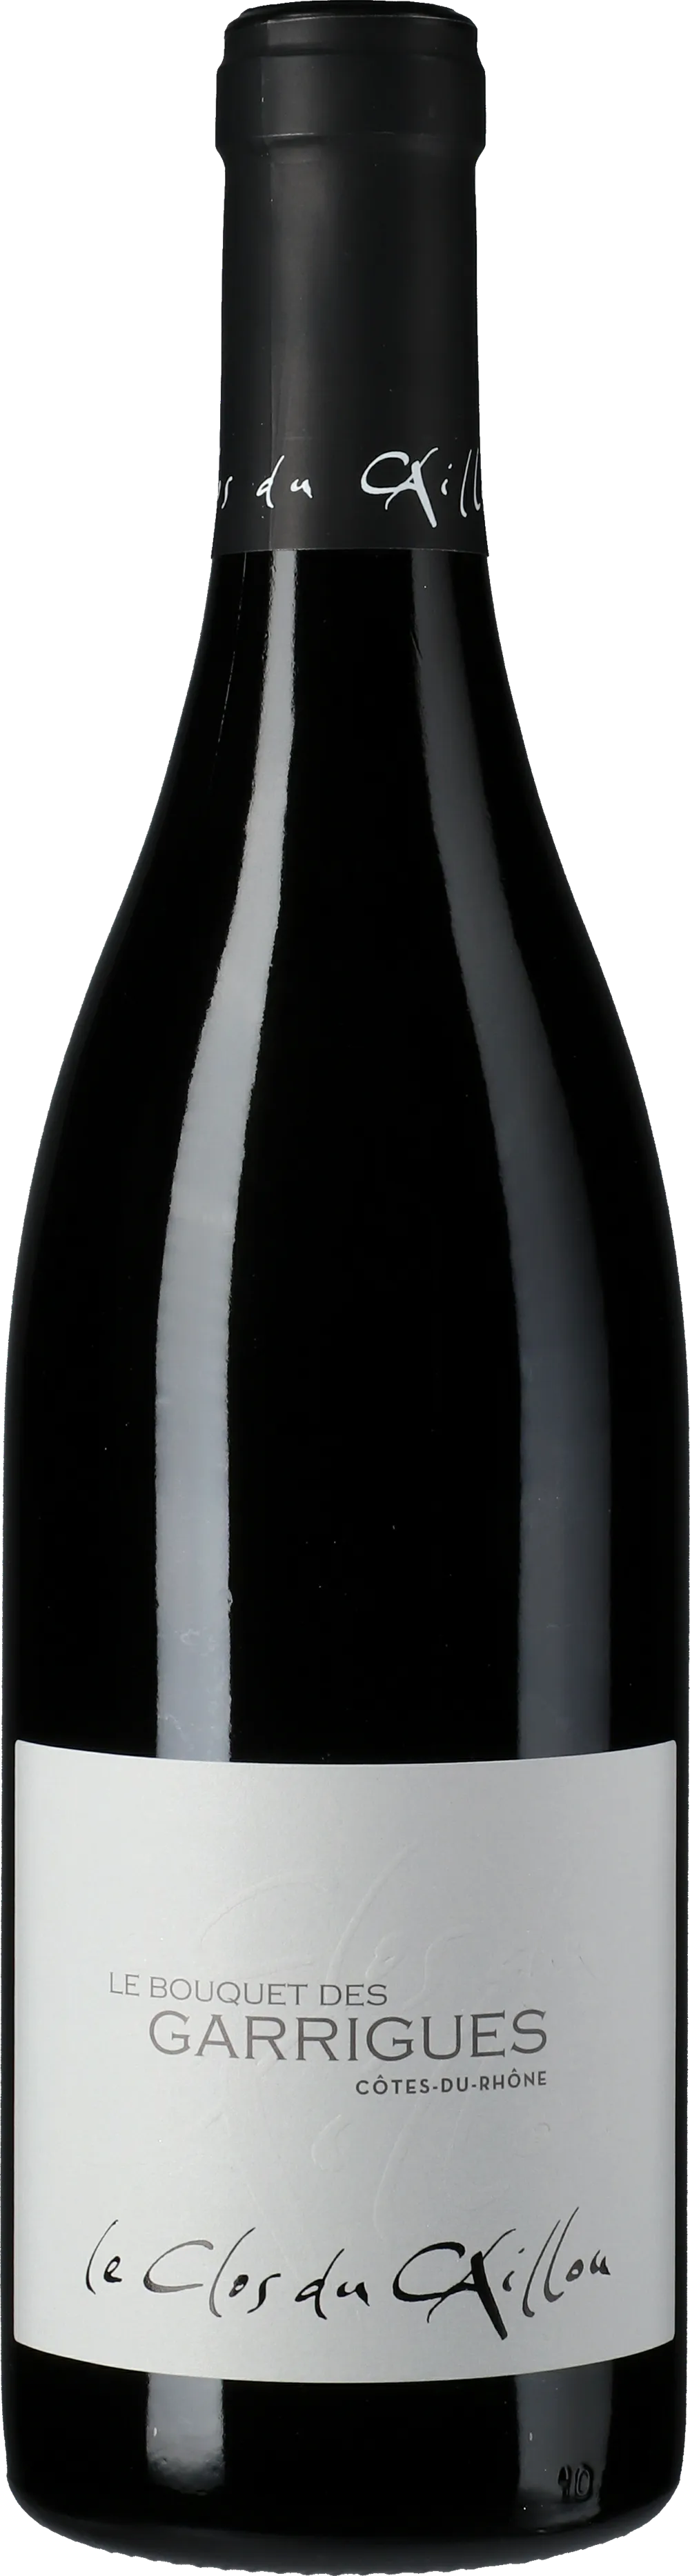 Bottle of Clos du Caillou Côtes du Rhône Le Bouquet Des Garrigueswith label visible